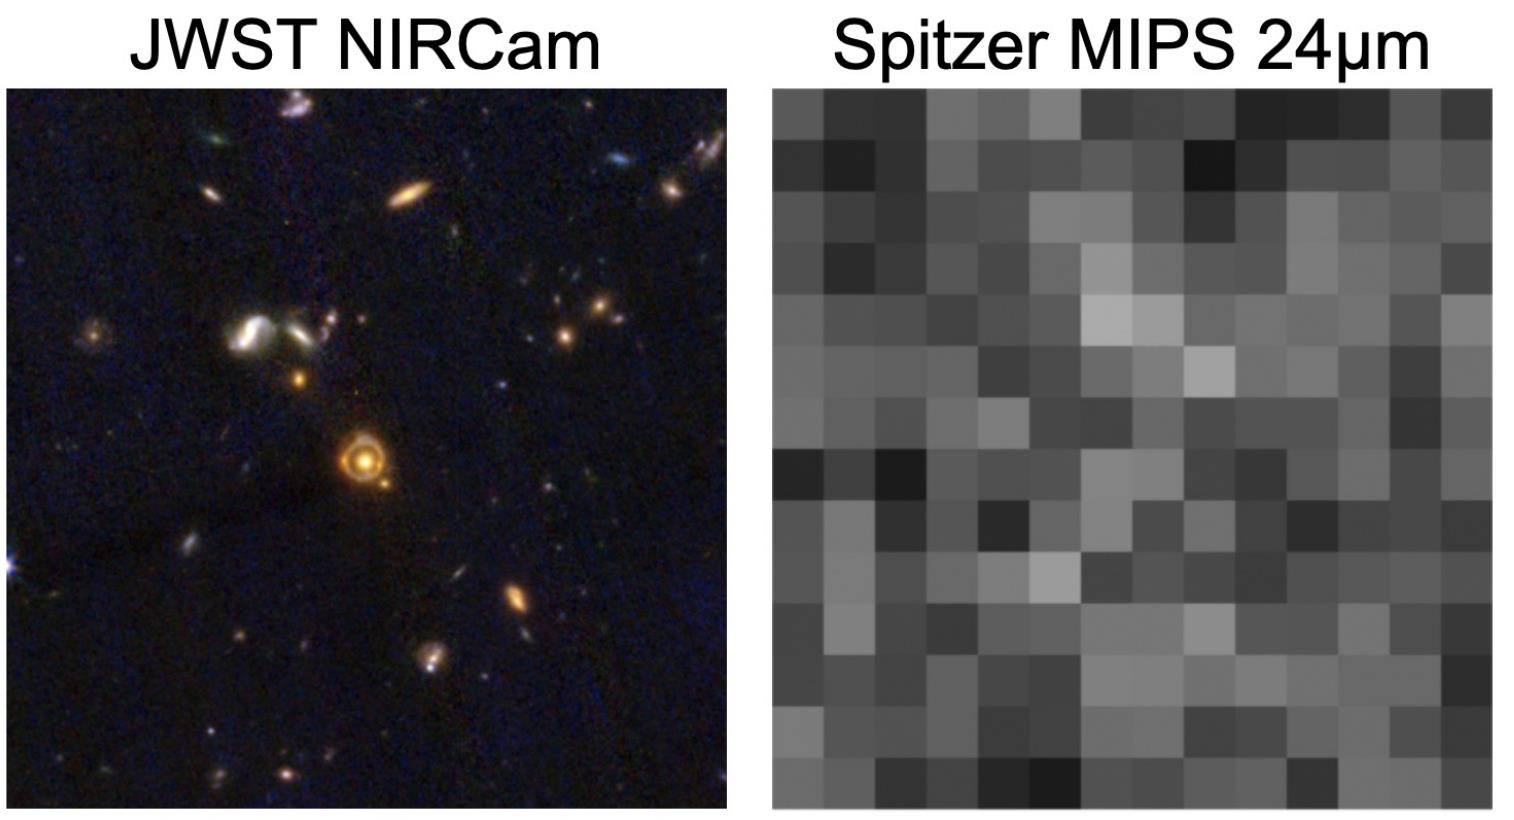 JWST Spitzer-lensstelsel